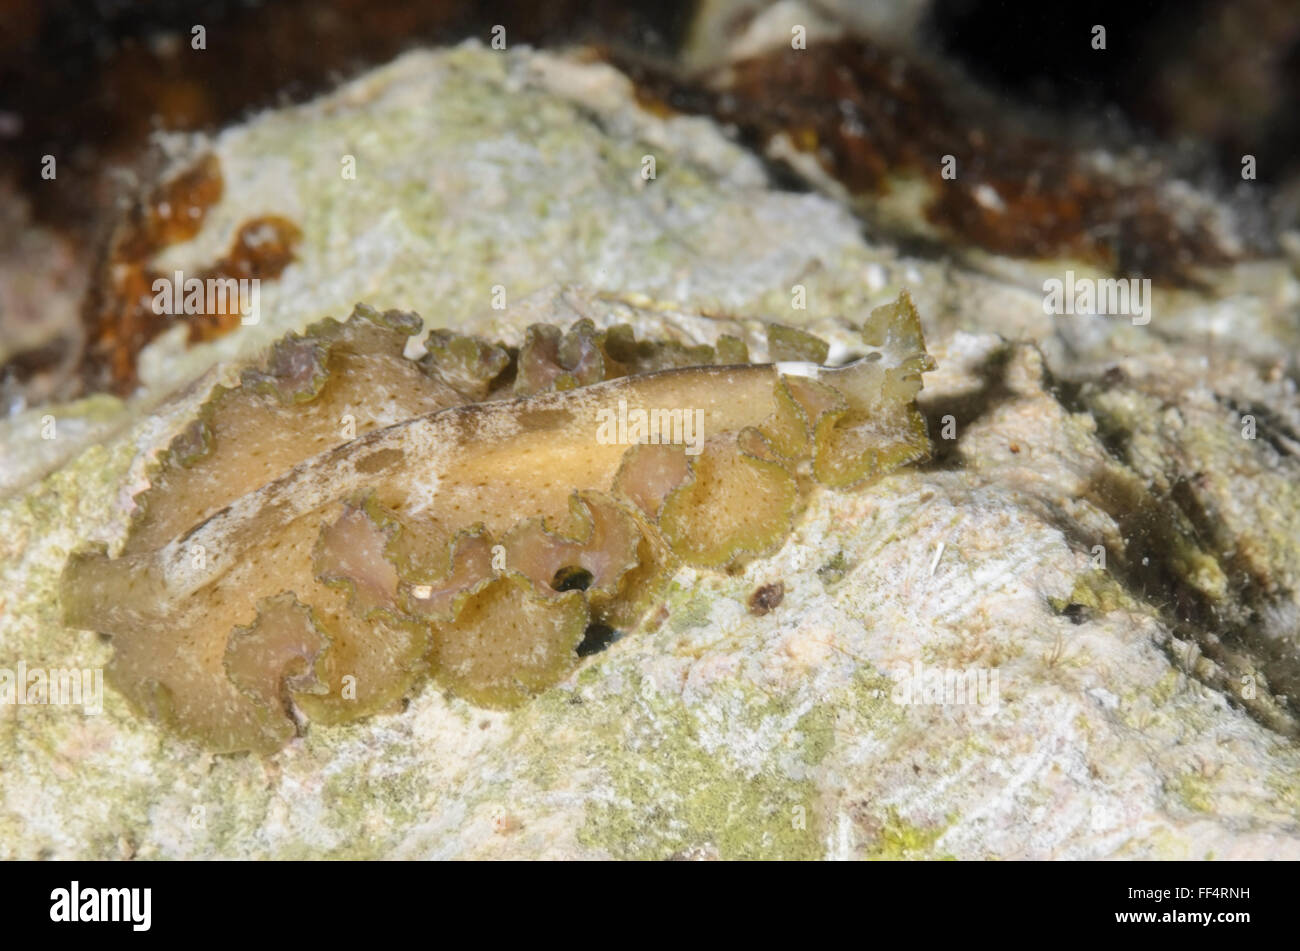 Cryptic flatworm, Pseudobiceros kryptos, Moalboal, Tuble, Cebu, Philippines Stock Photo